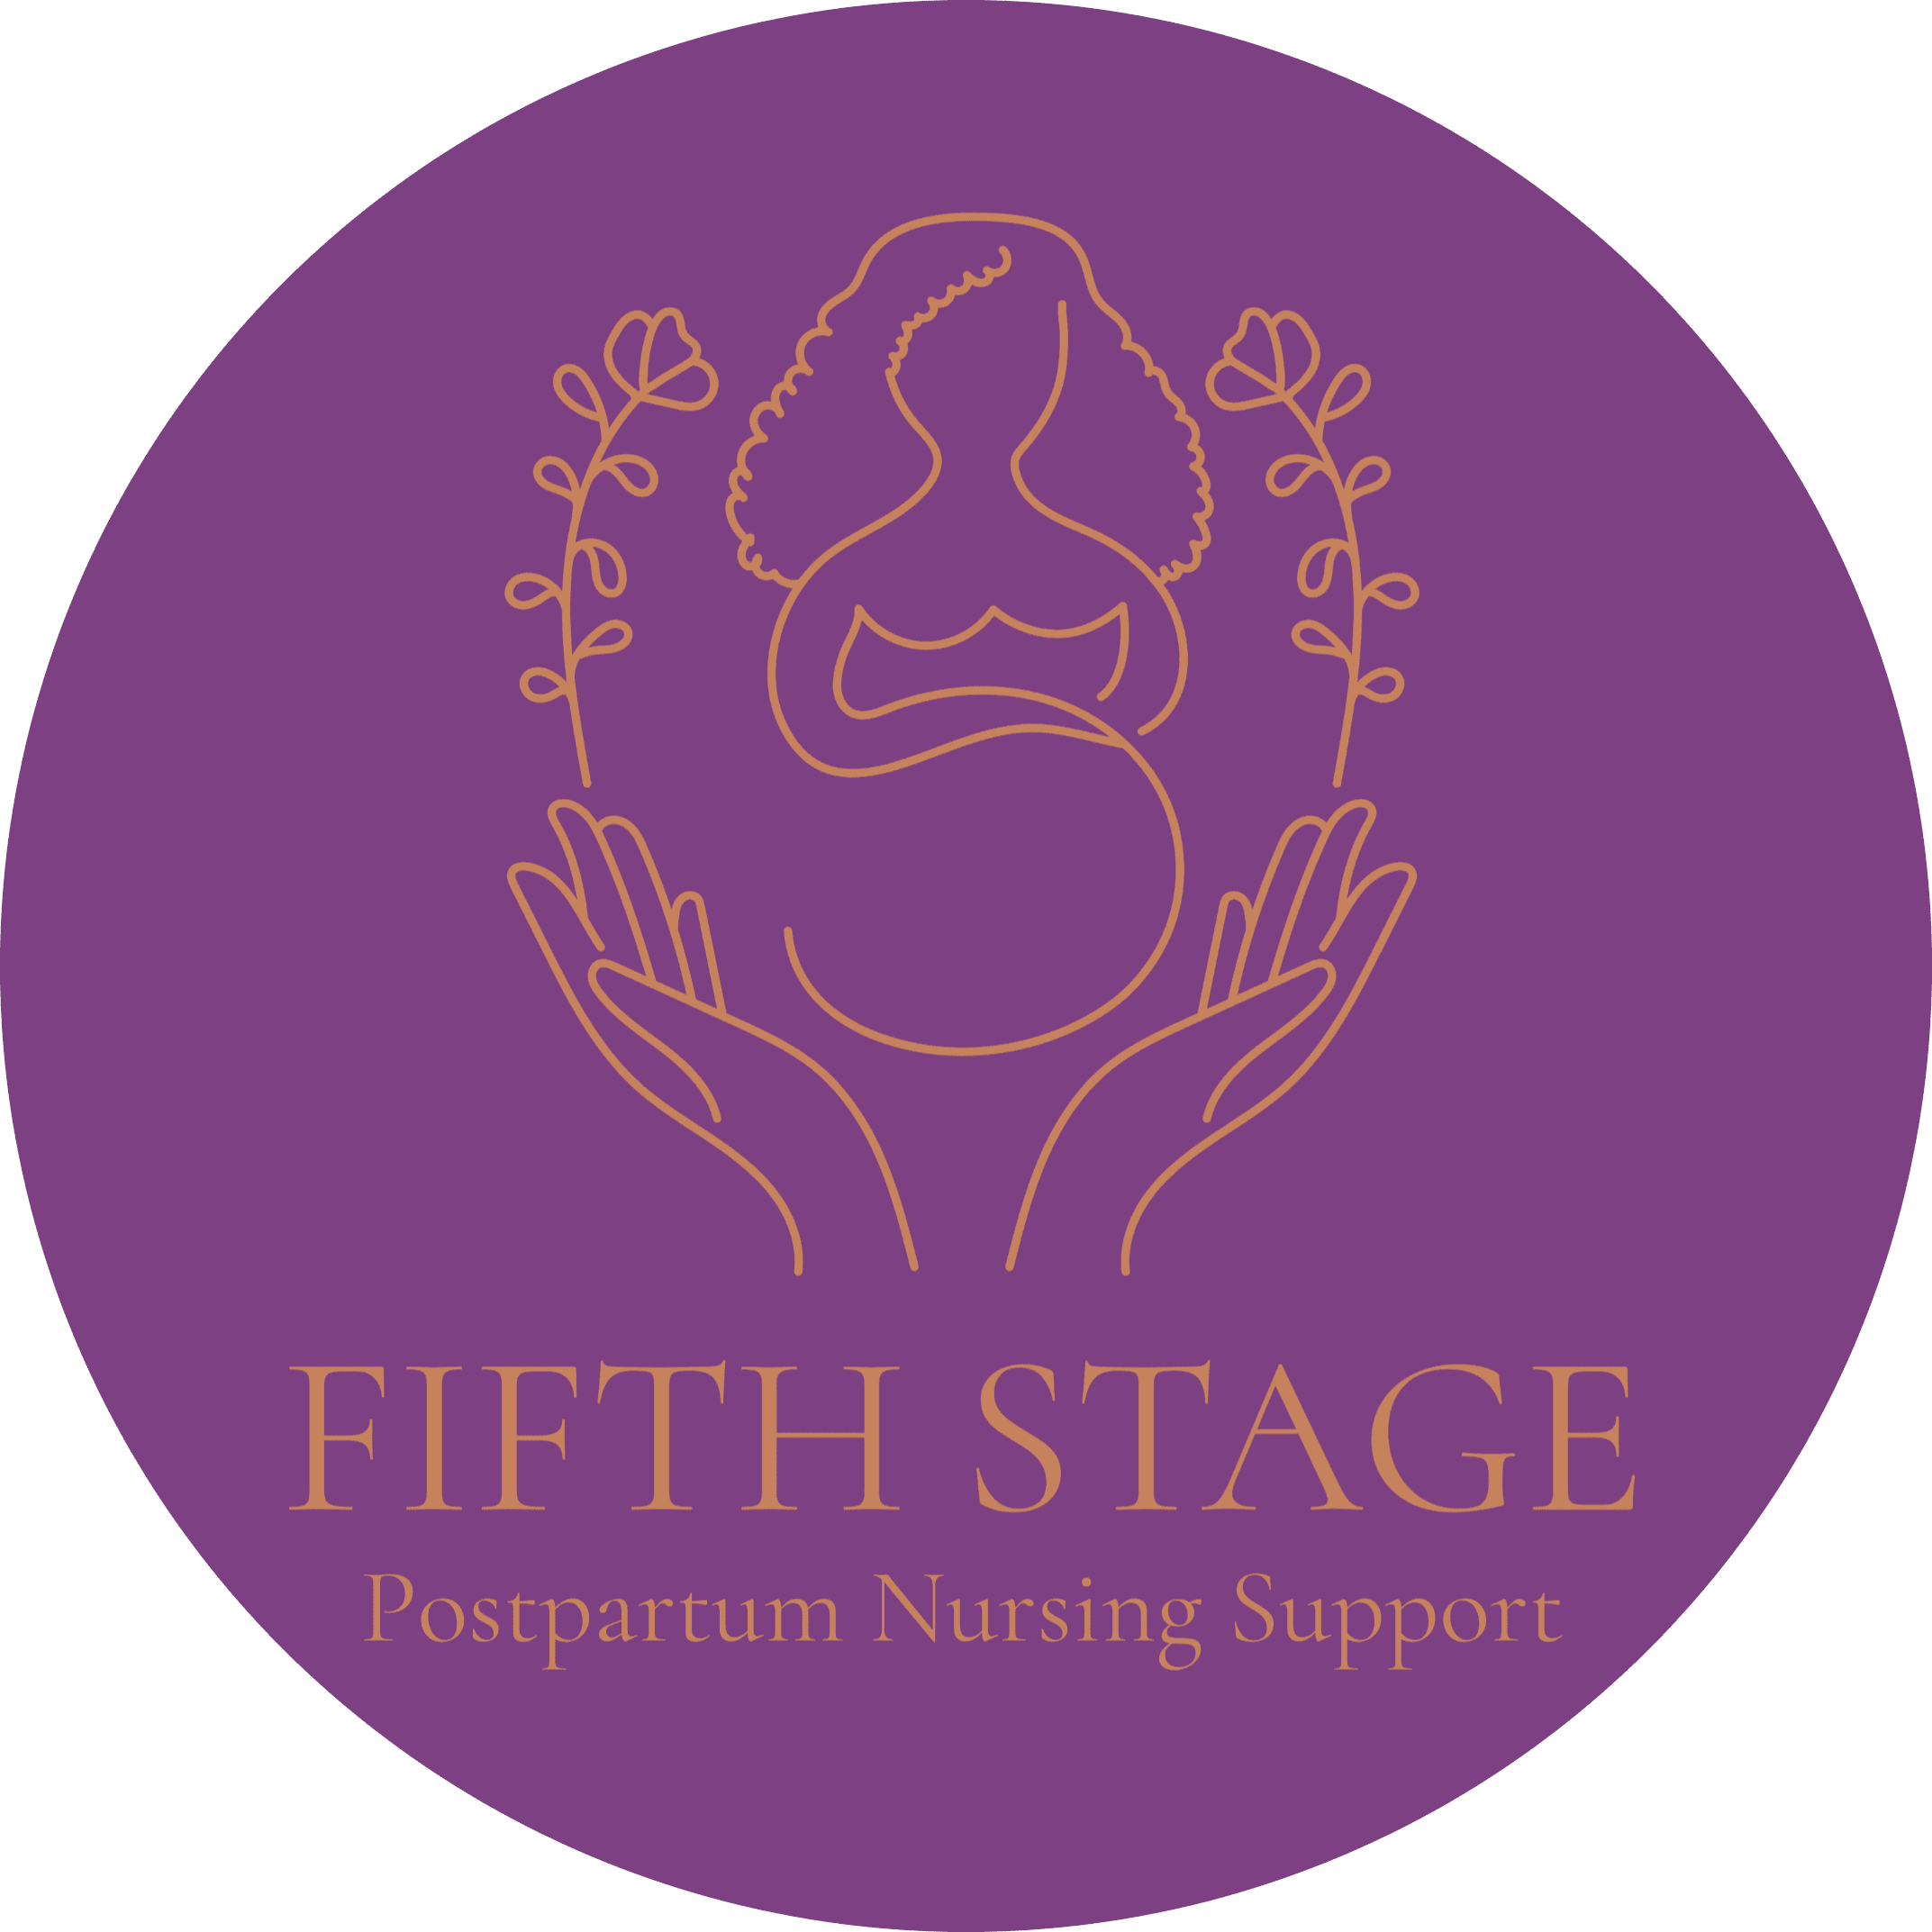 Fifth Stage Postpartum Nursing Support